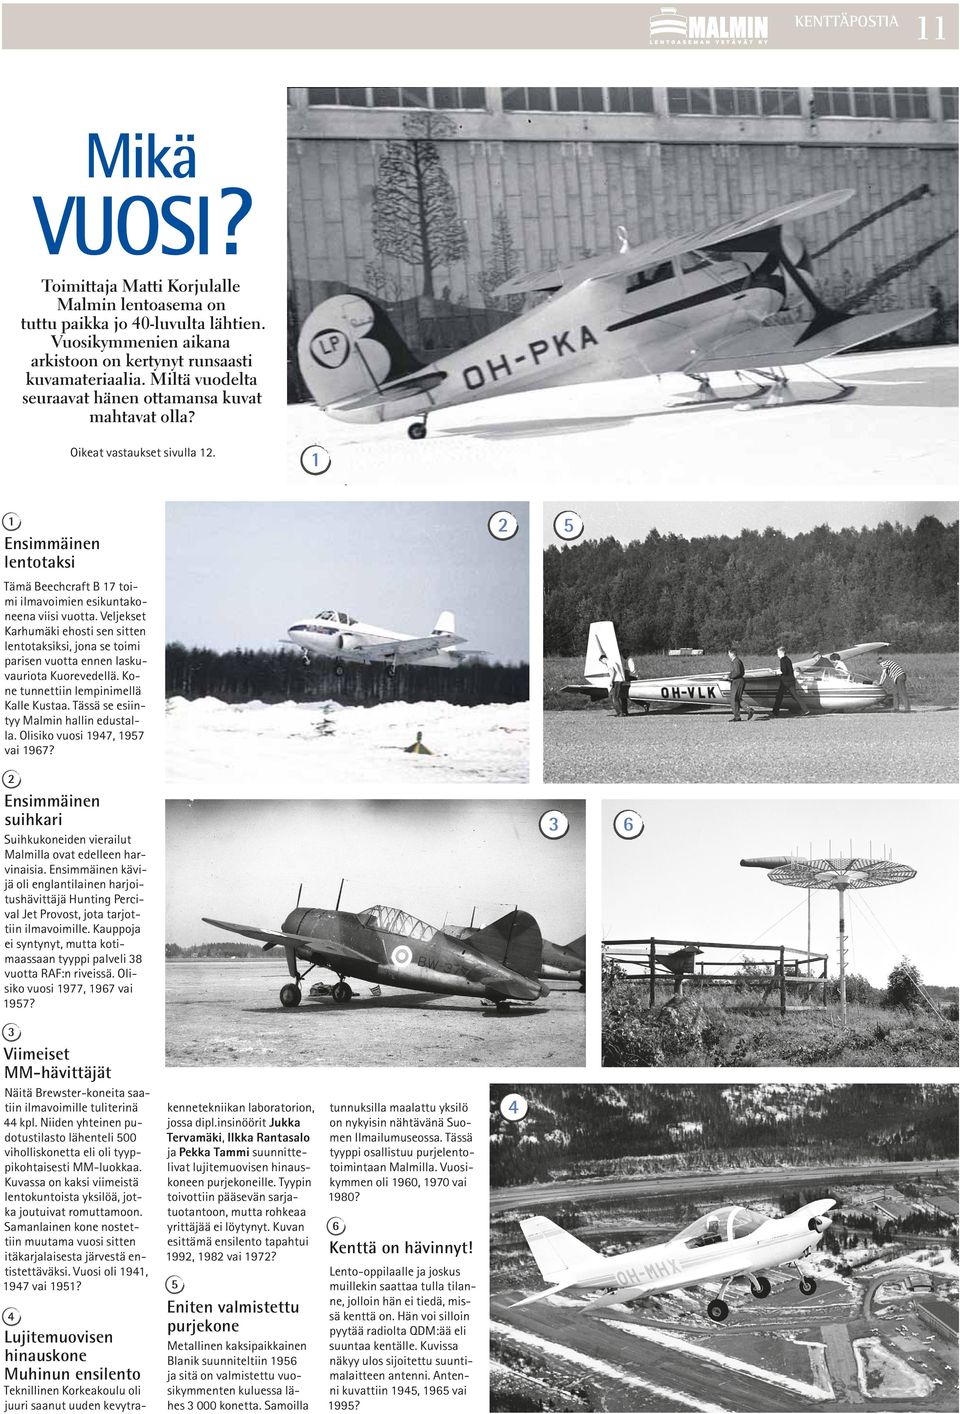 Veljekset Karhumäki ehosti sen sitten lentotaksiksi, jona se toimi parisen vuotta ennen laskuvauriota Kuorevedellä. Kone tunnettiin lempinimellä Kalle Kustaa.